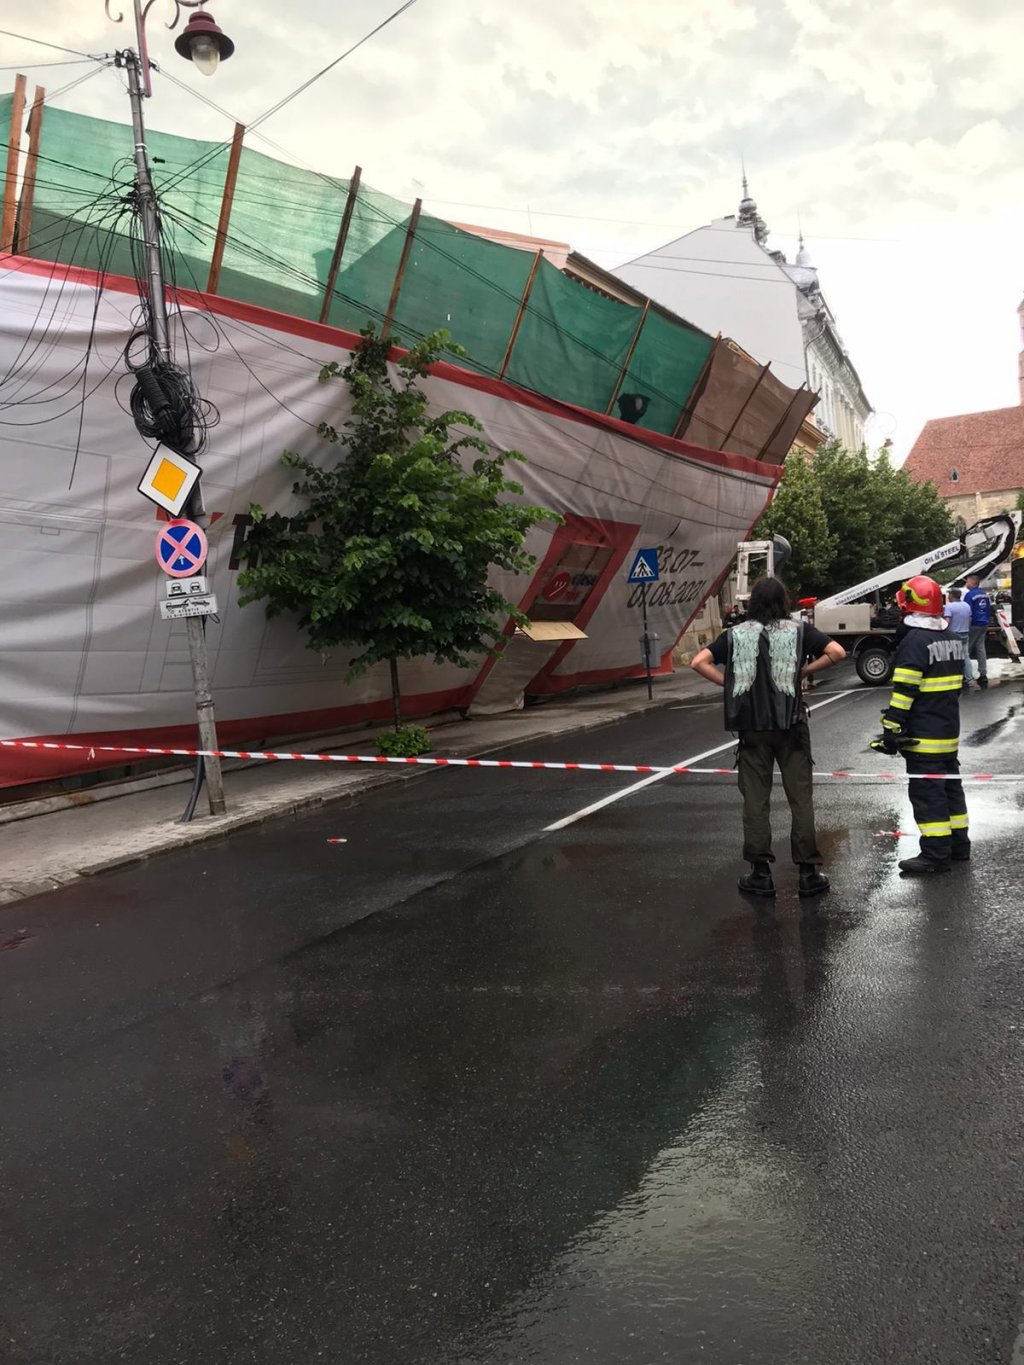 Schela de la casa TIFF, dusă de vânt. ISU Cluj a intervenit pentru a repara greșeala proprietarilor